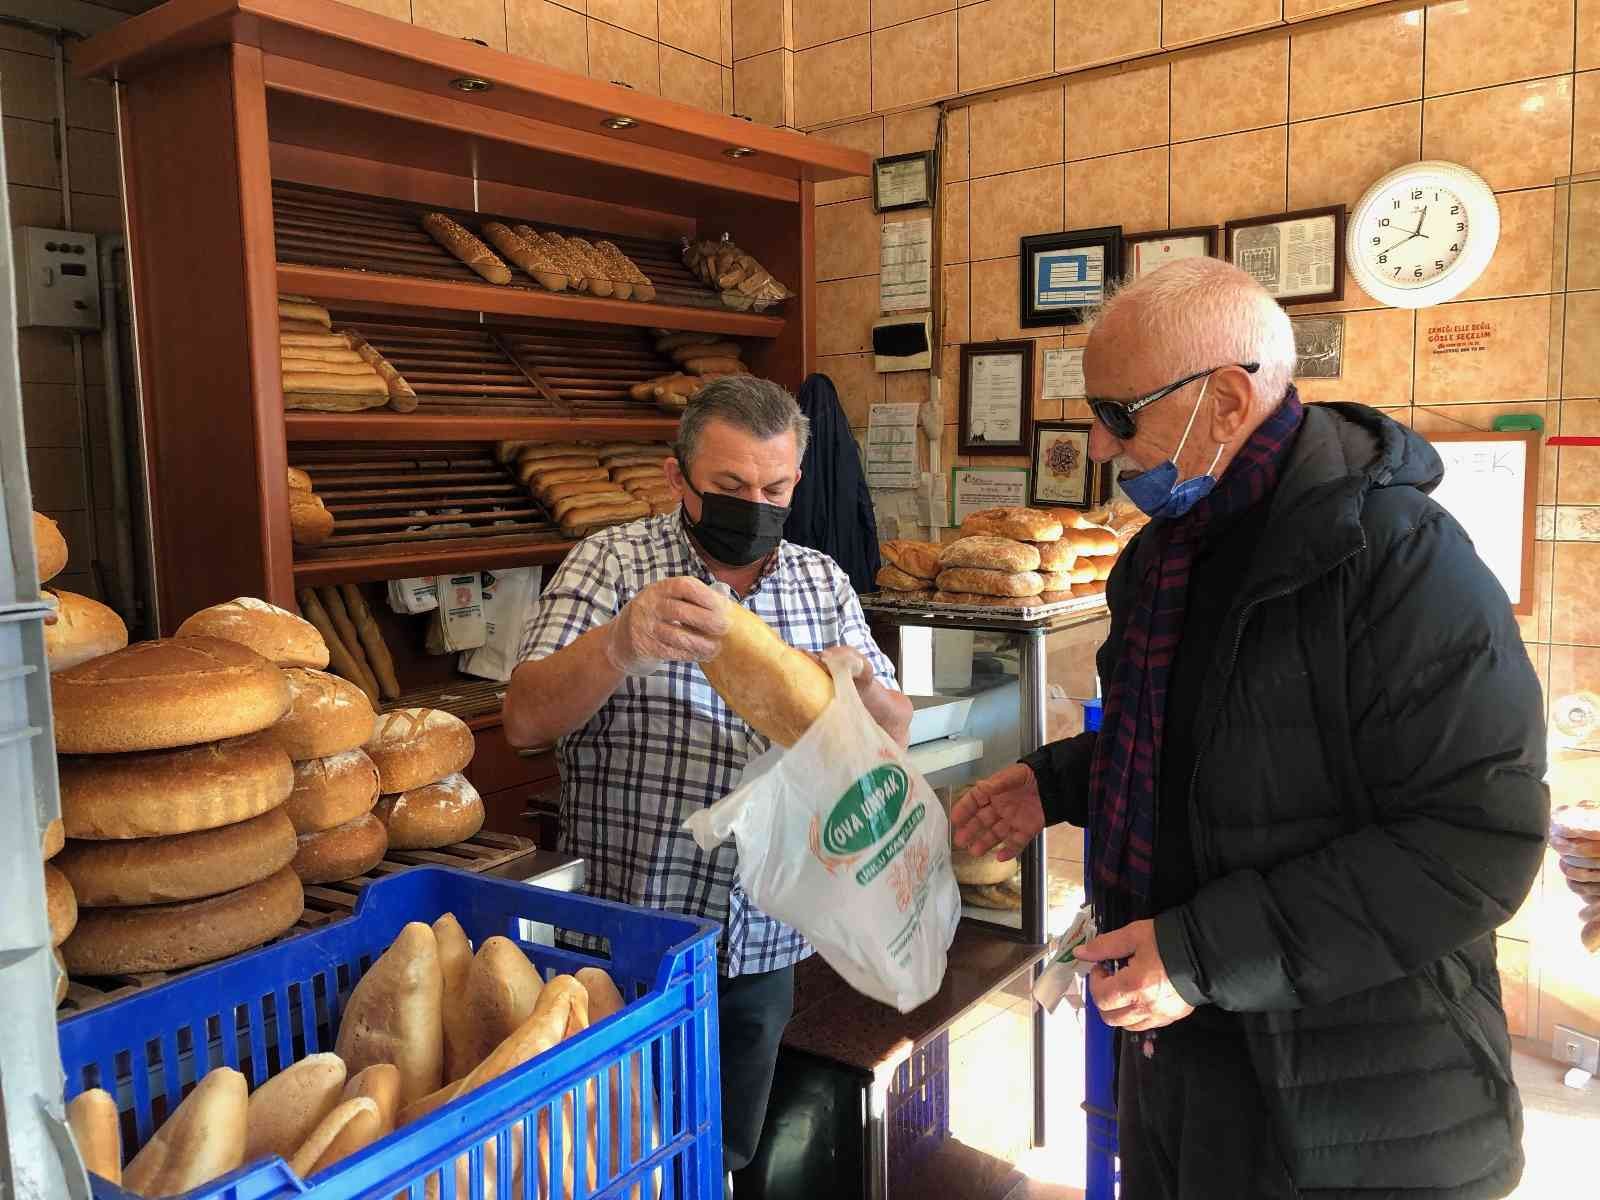 İstanbul’da fırınlar ekmek fiyatını artırmayı bekliyor #istanbul